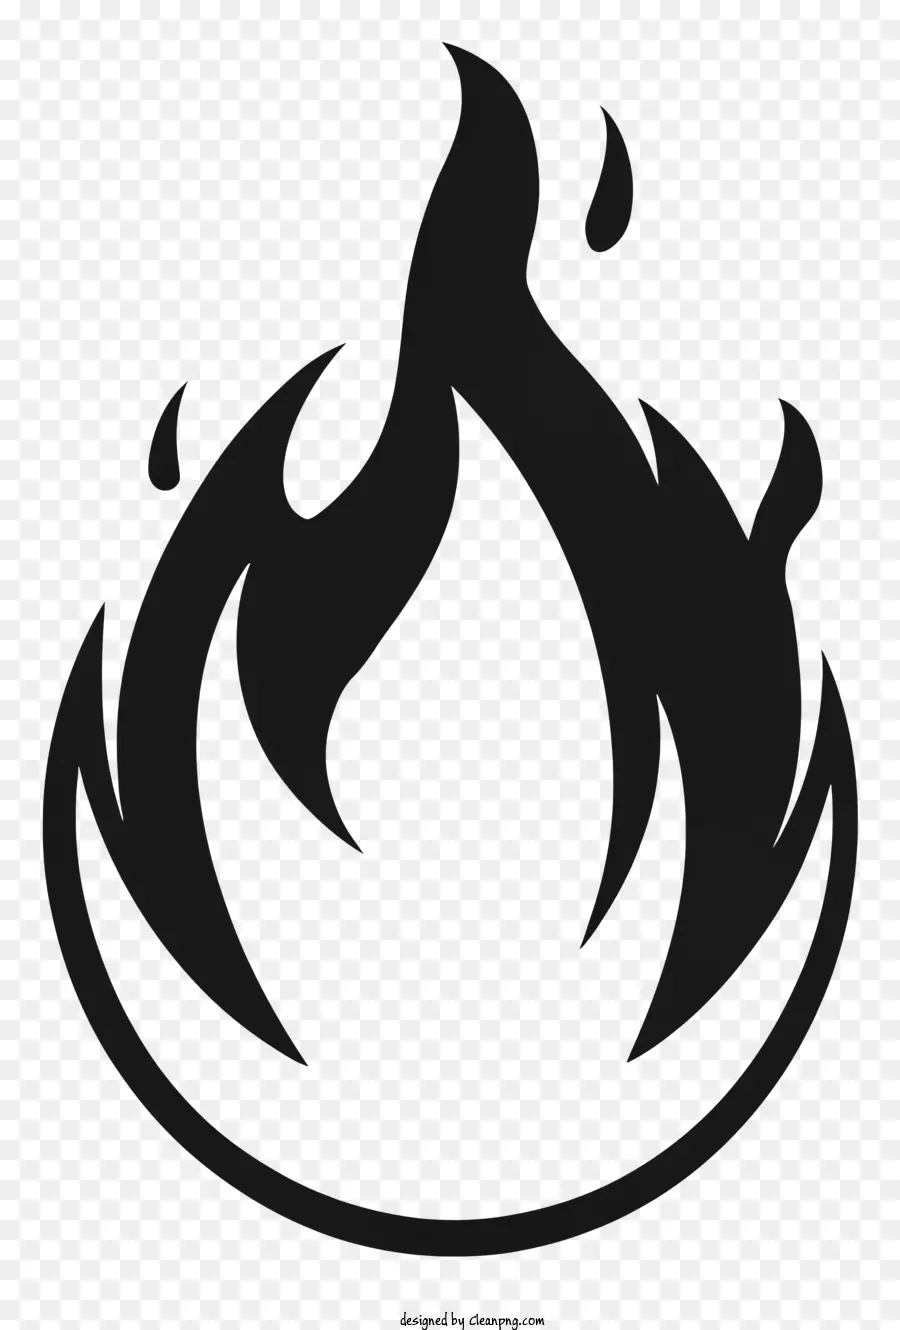 Feuer symbol - Schwarzes Feuersymbol mit konzentrischen Kreisen und Linien